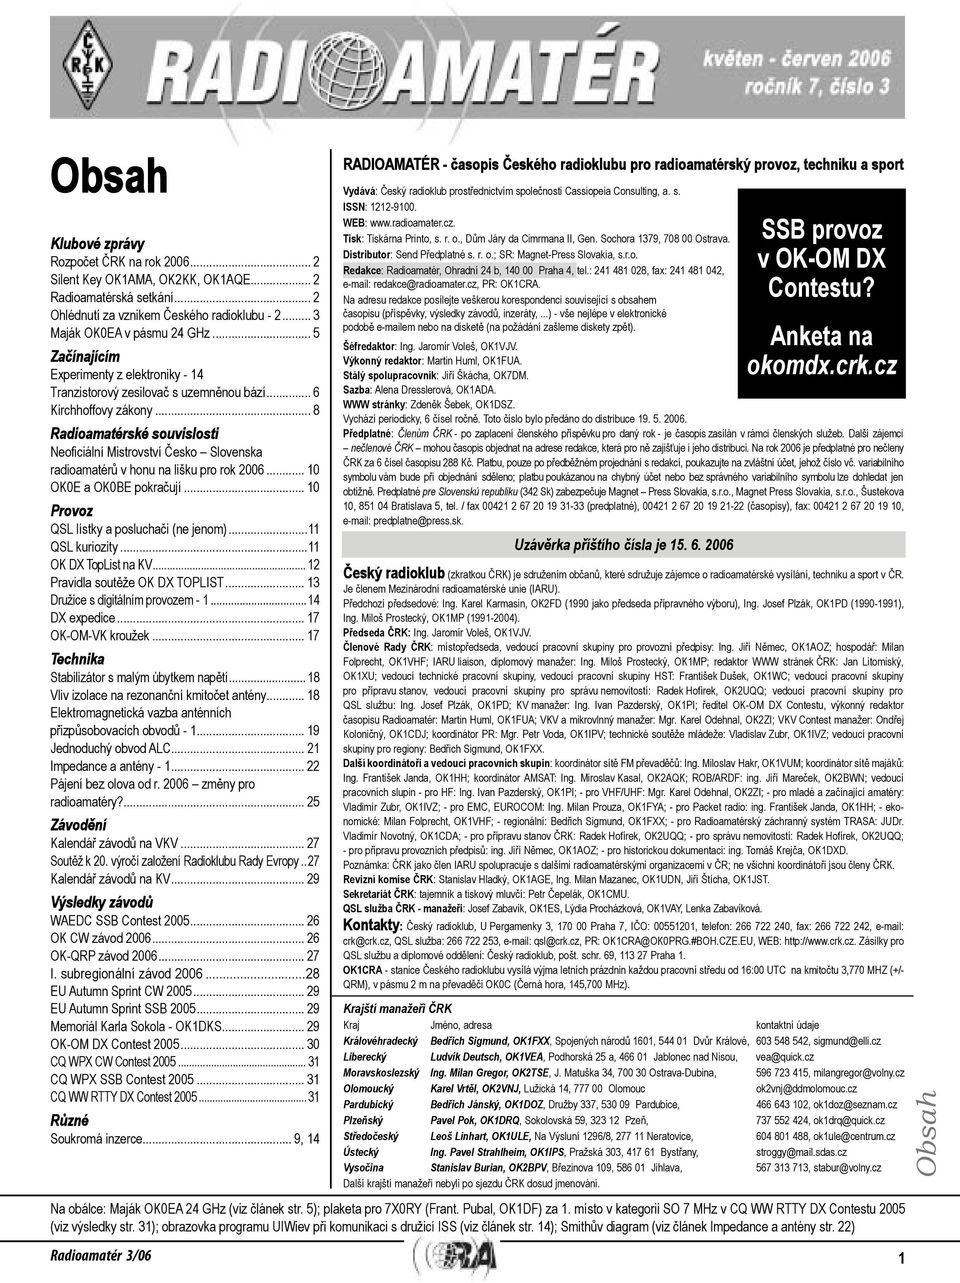 2006 10 OK0E a OK0BE pokračují 10 Provoz QSL lístky a posluchači (ne jenom) 11 QSL kuriozity 11 OK DX TopList na KV 12 Pravidla soutěže OK DX TOPLIST 13 Družice s digitálním provozem - 1 14 DX